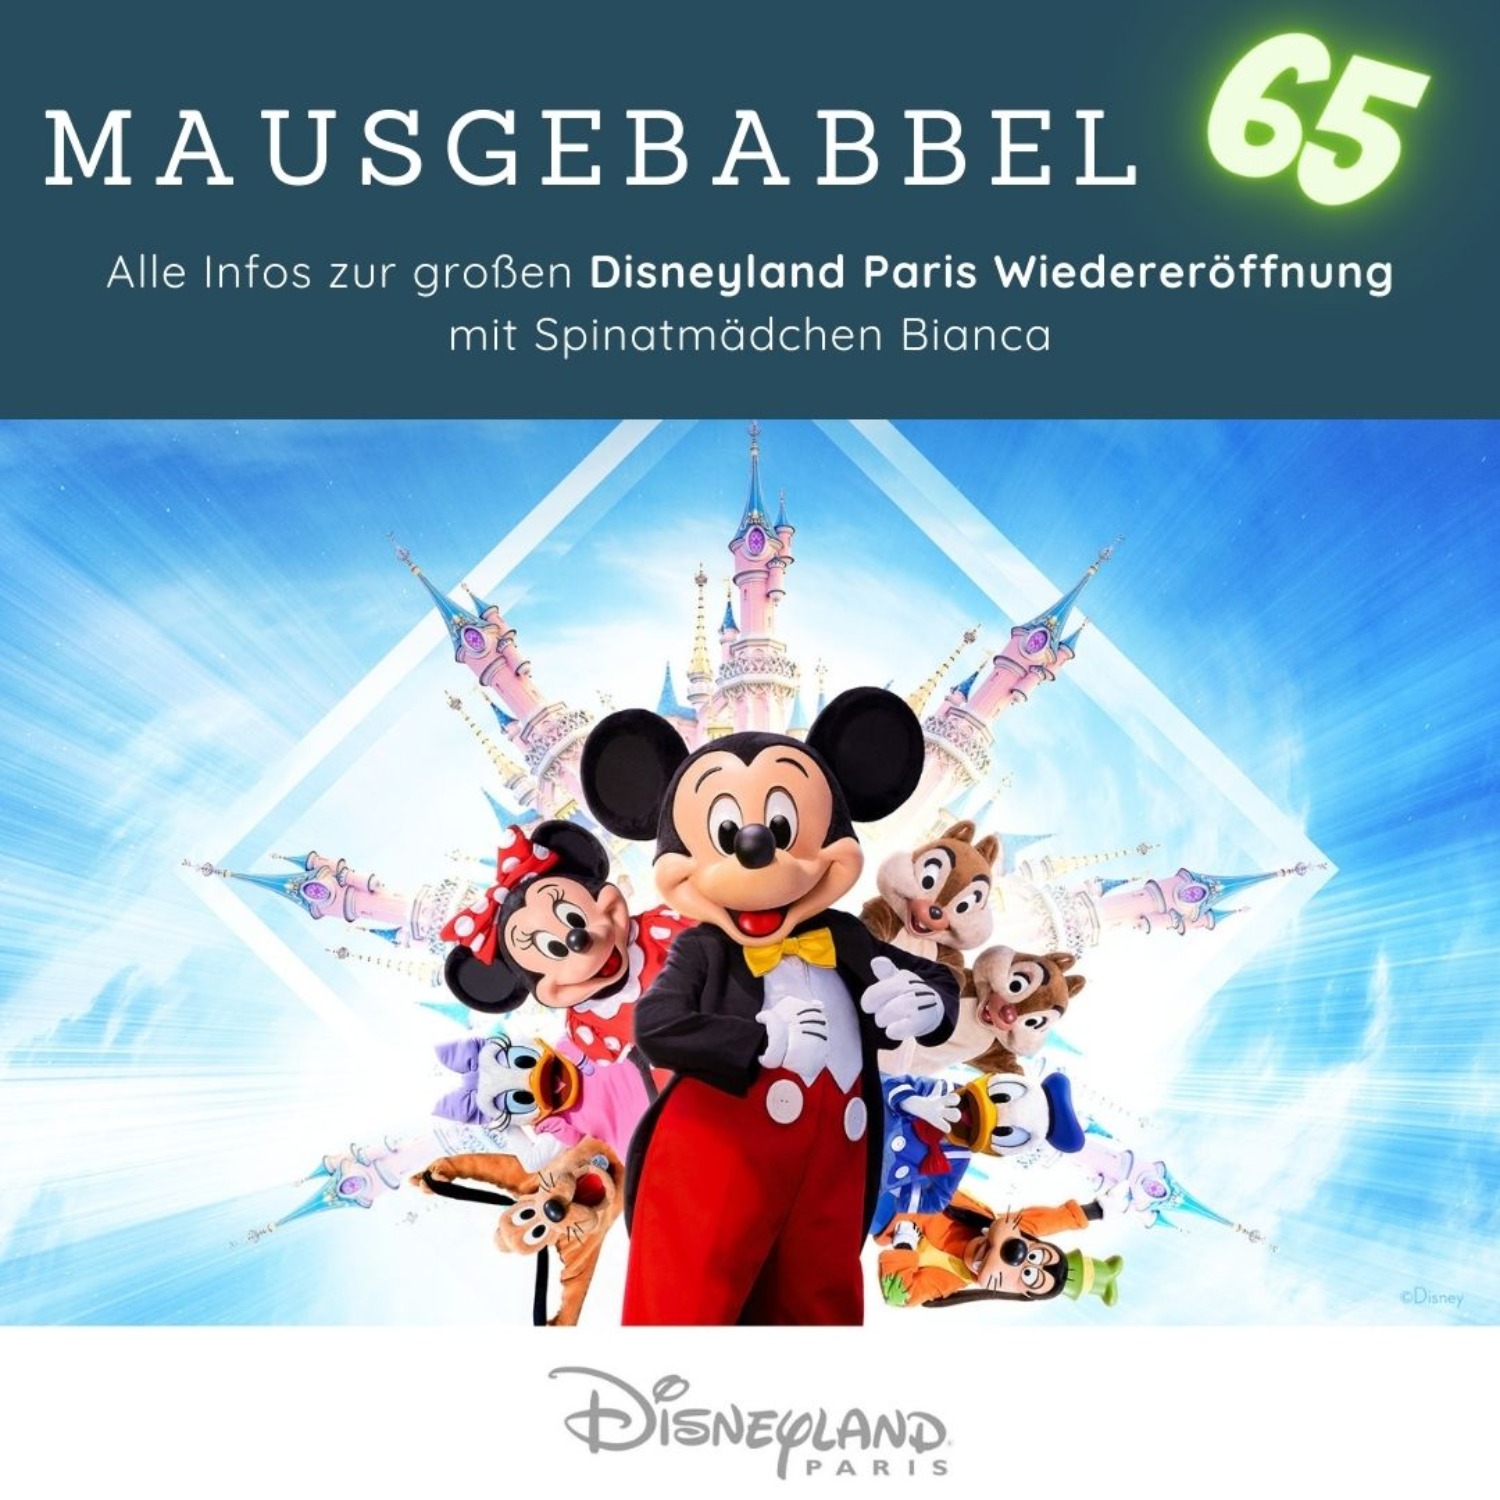 Disneyland Paris Wiedereröffnung als Podcast - Mausgebabbel 65